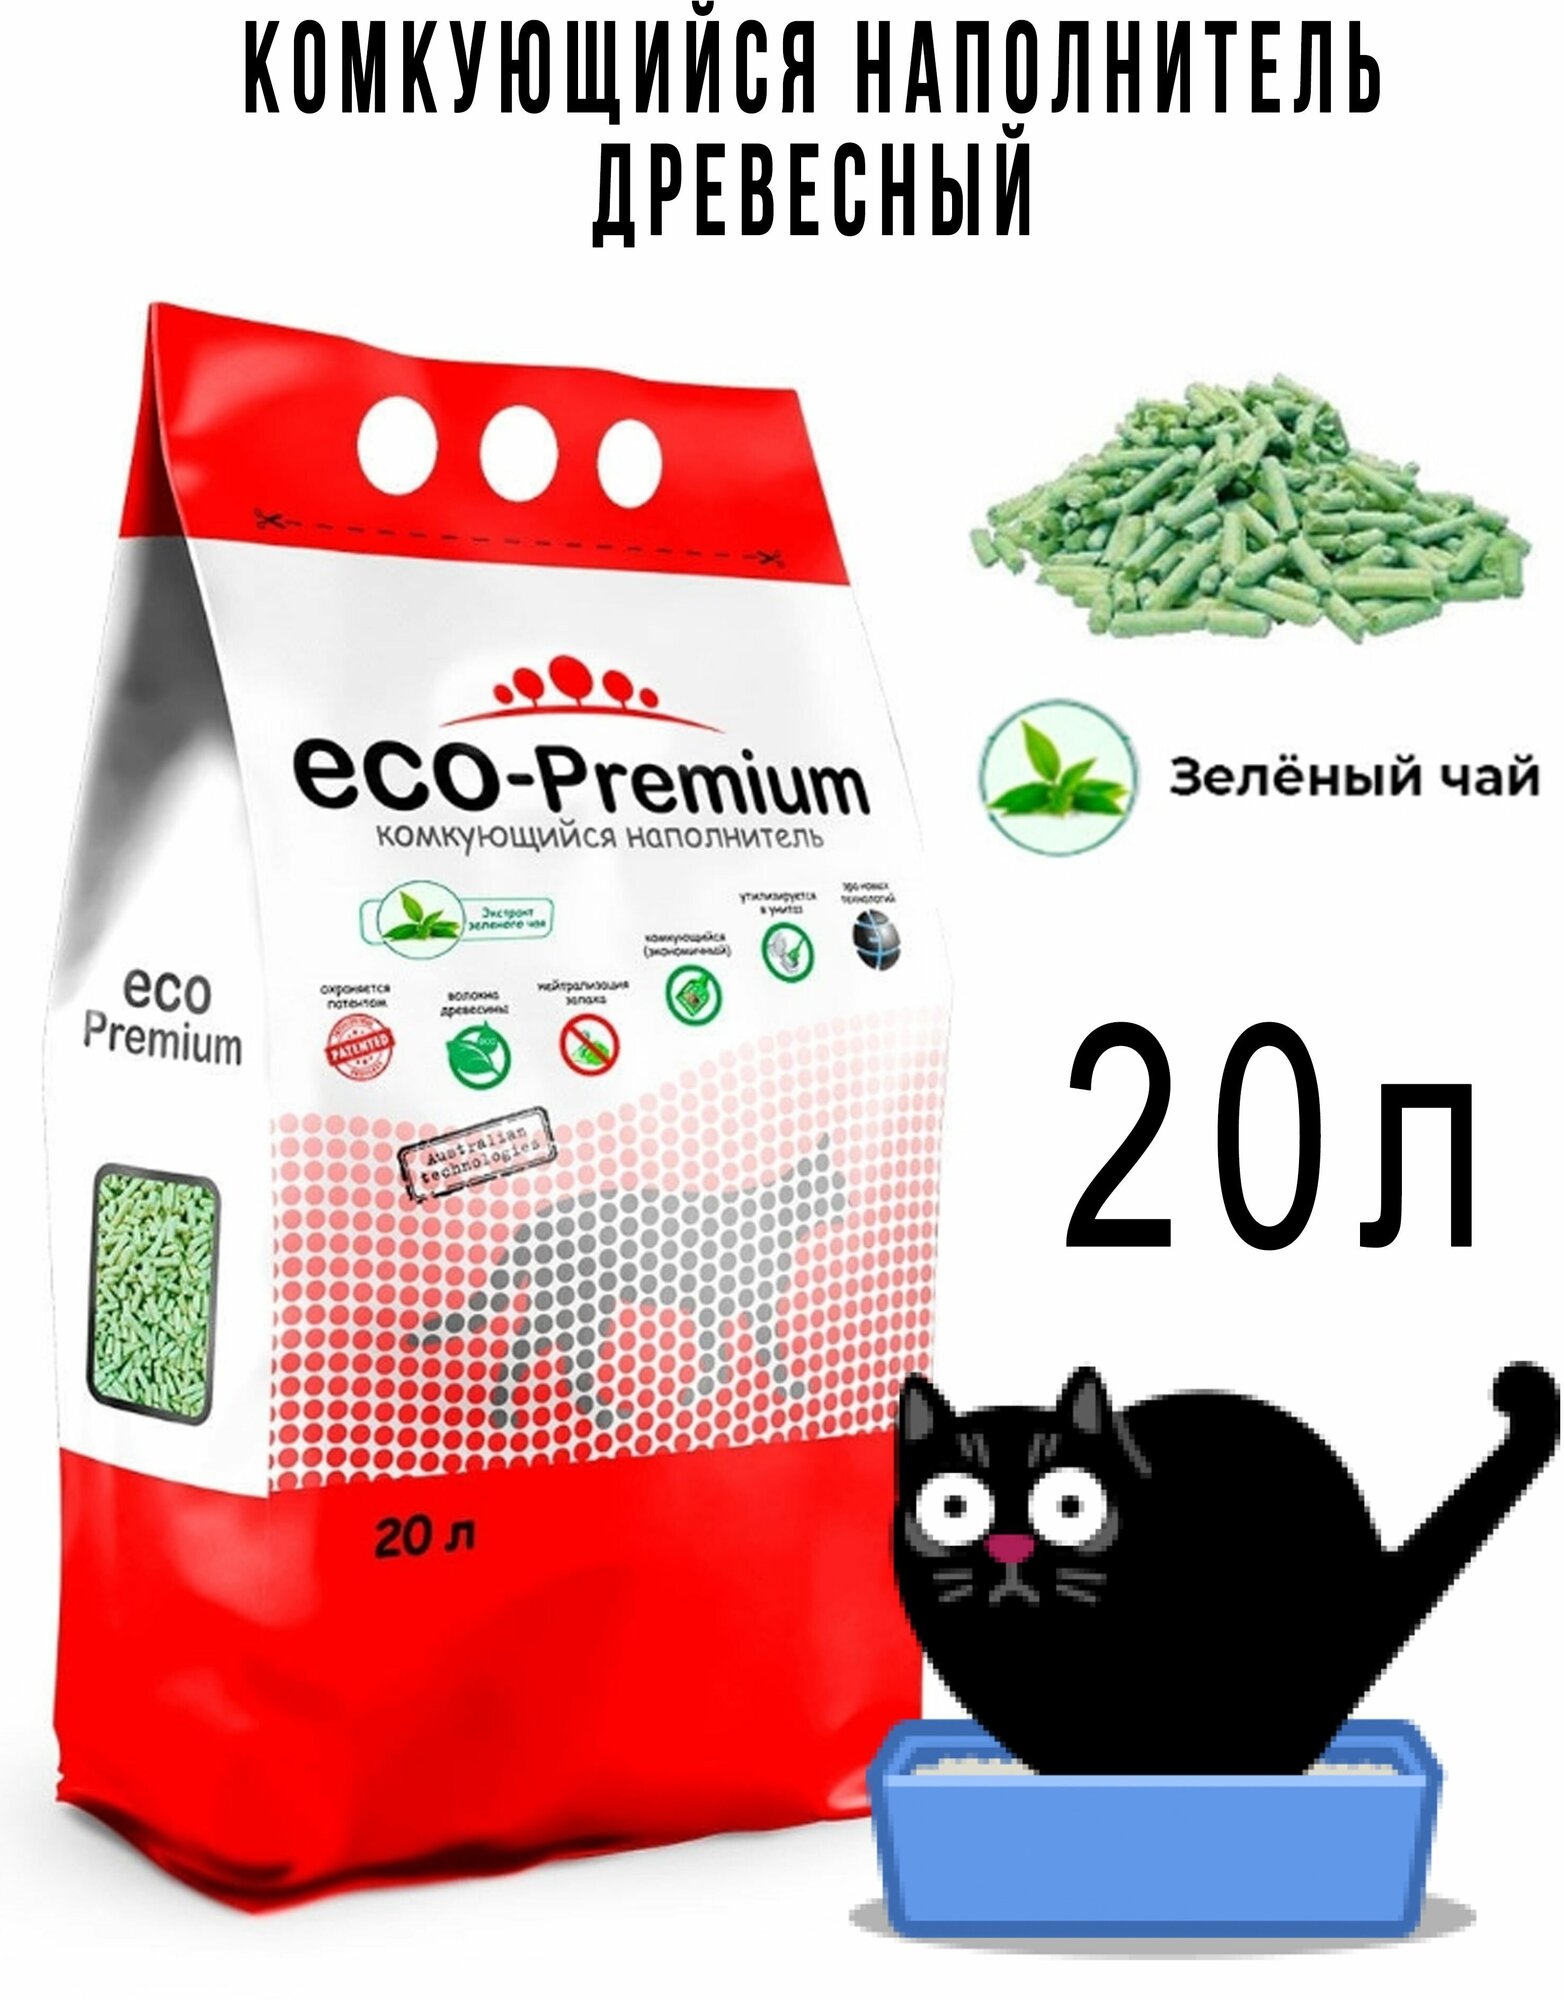 Наполнитель древесный комкующийся, ECO-Premium (Эко-премиум) с запахом зеленого чая, 7,6 кг, 20 л